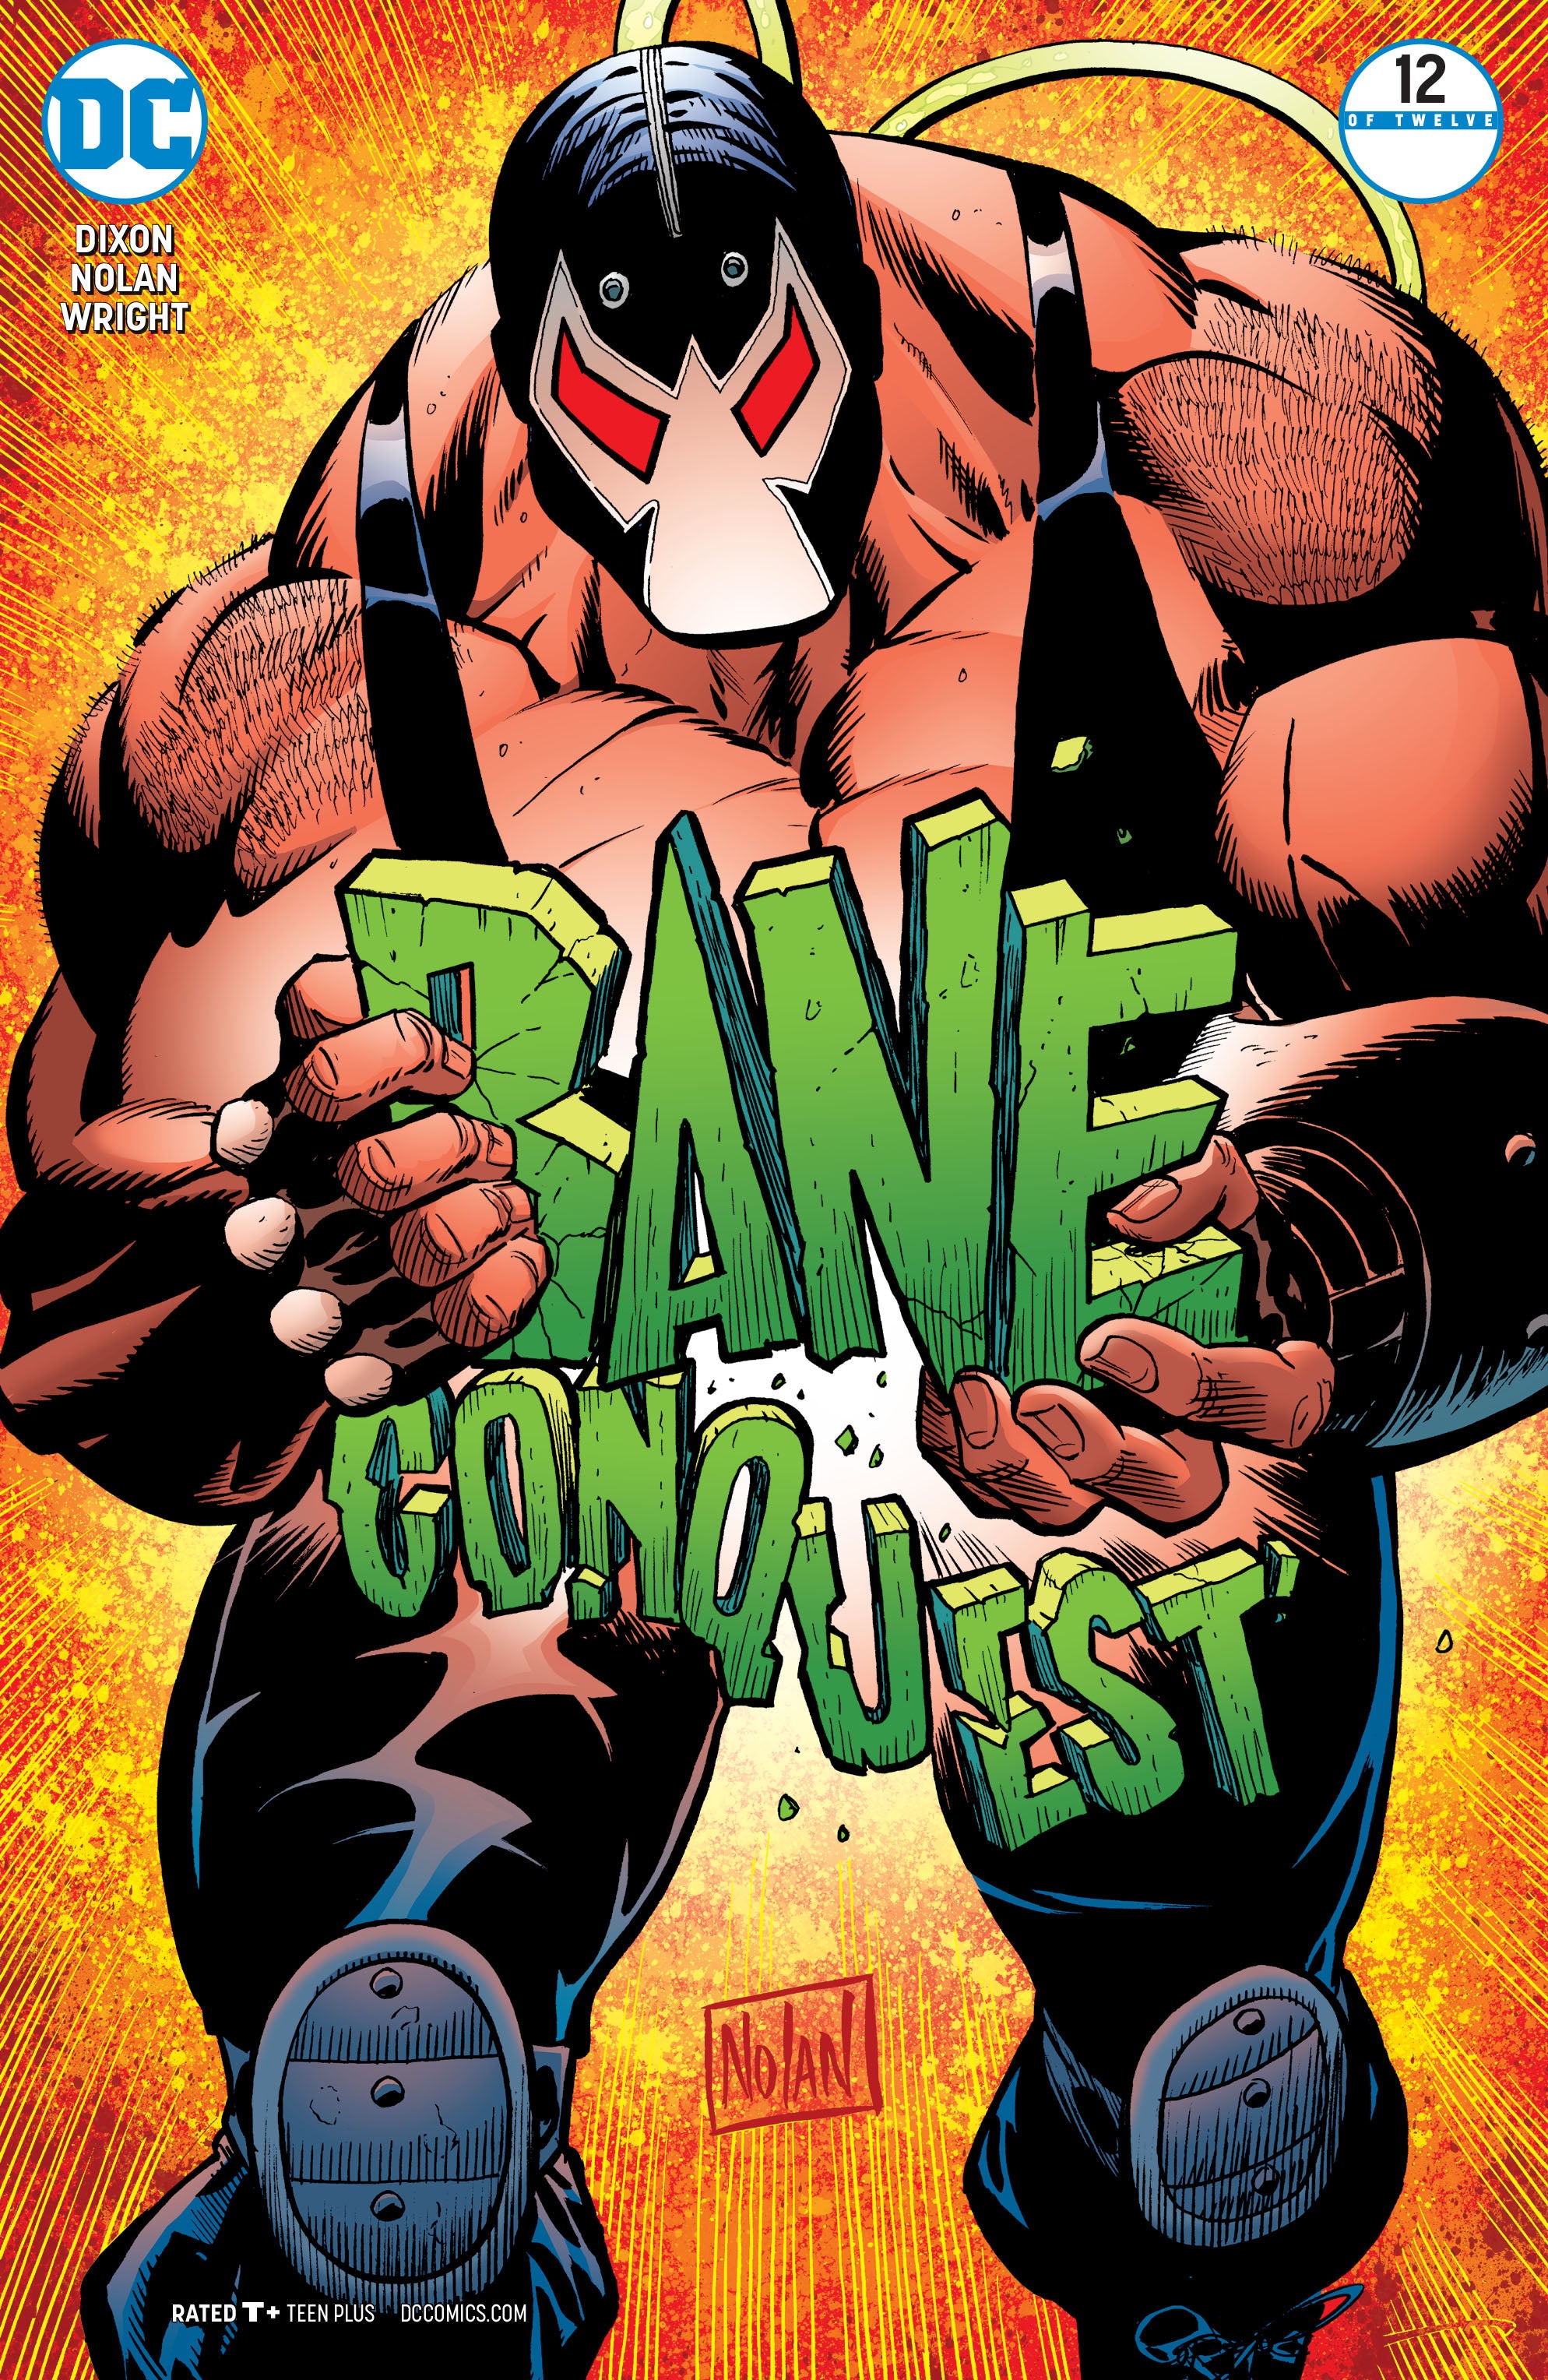 BANE CONQUEST #12 (OF 12) | L.A. Mood Comics and Games